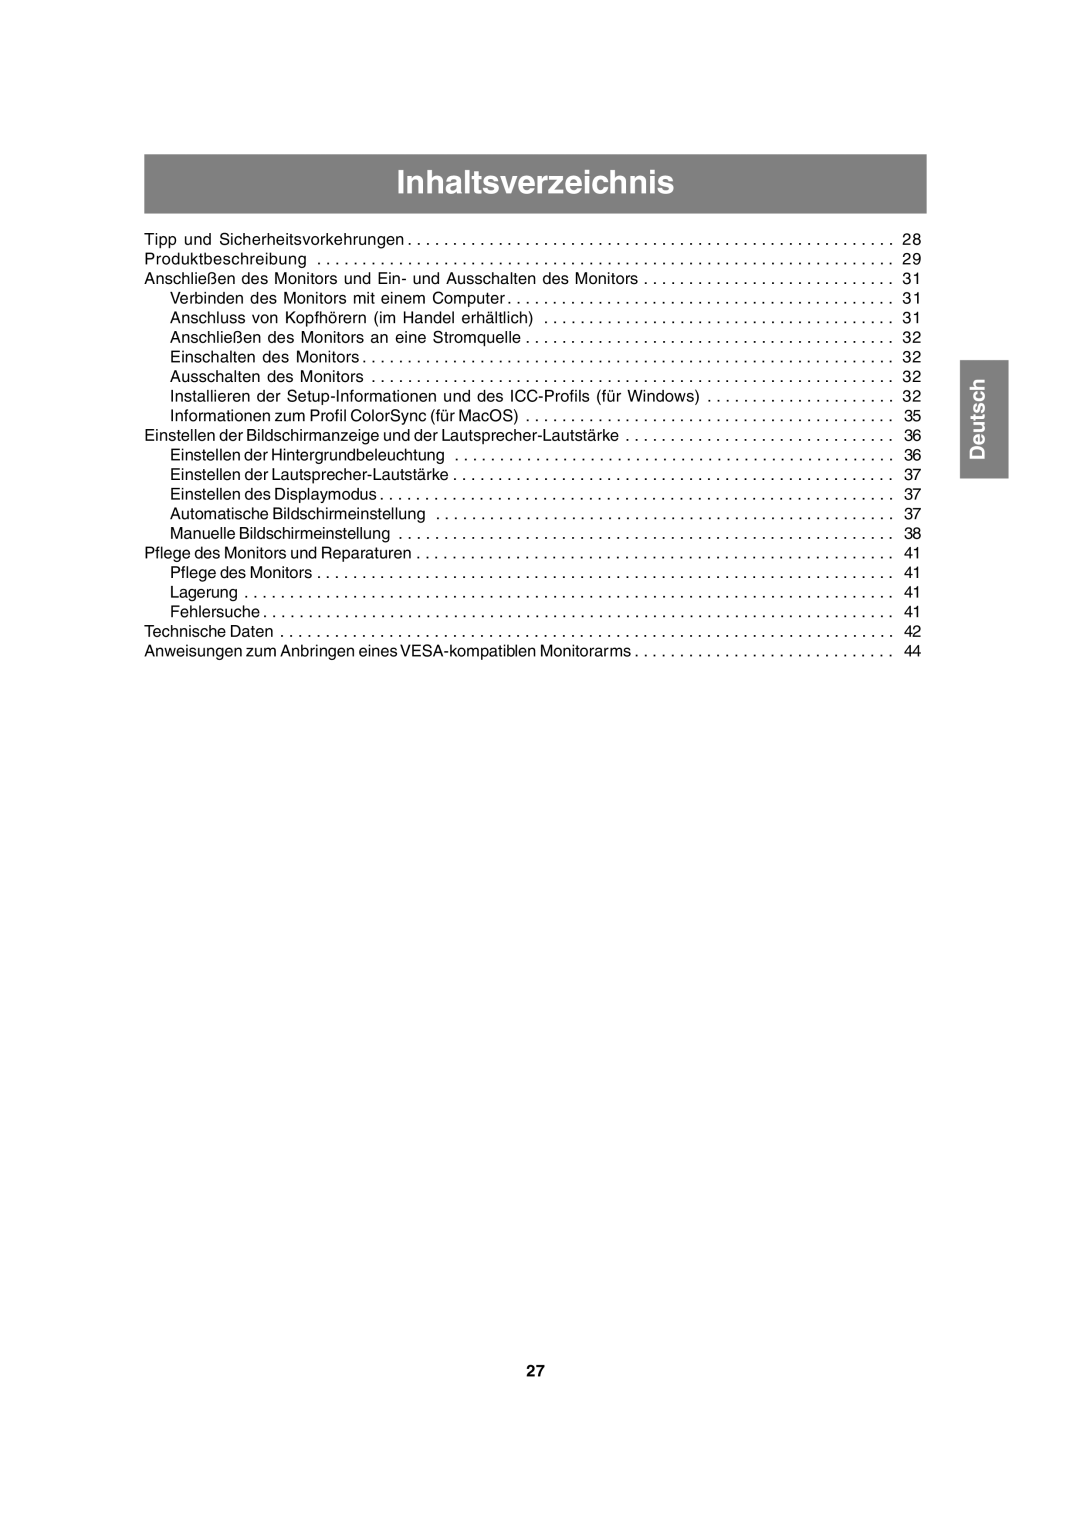 Sharp LL-T15A4 operation manual Inhaltsverzeichnis, Deutsch 